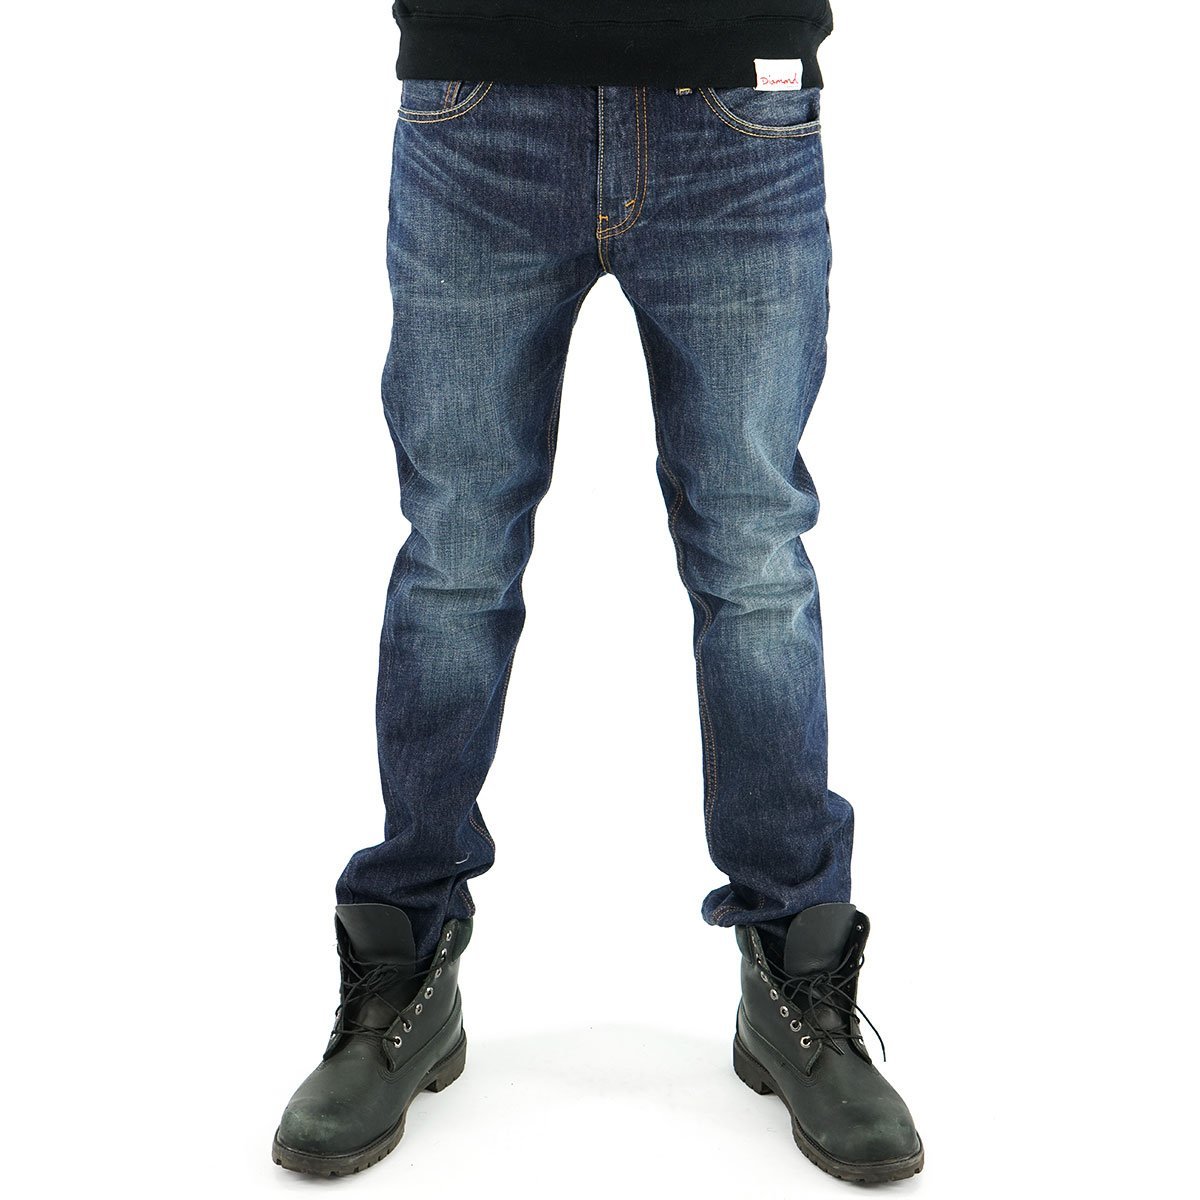 levis mens jeans slim fit